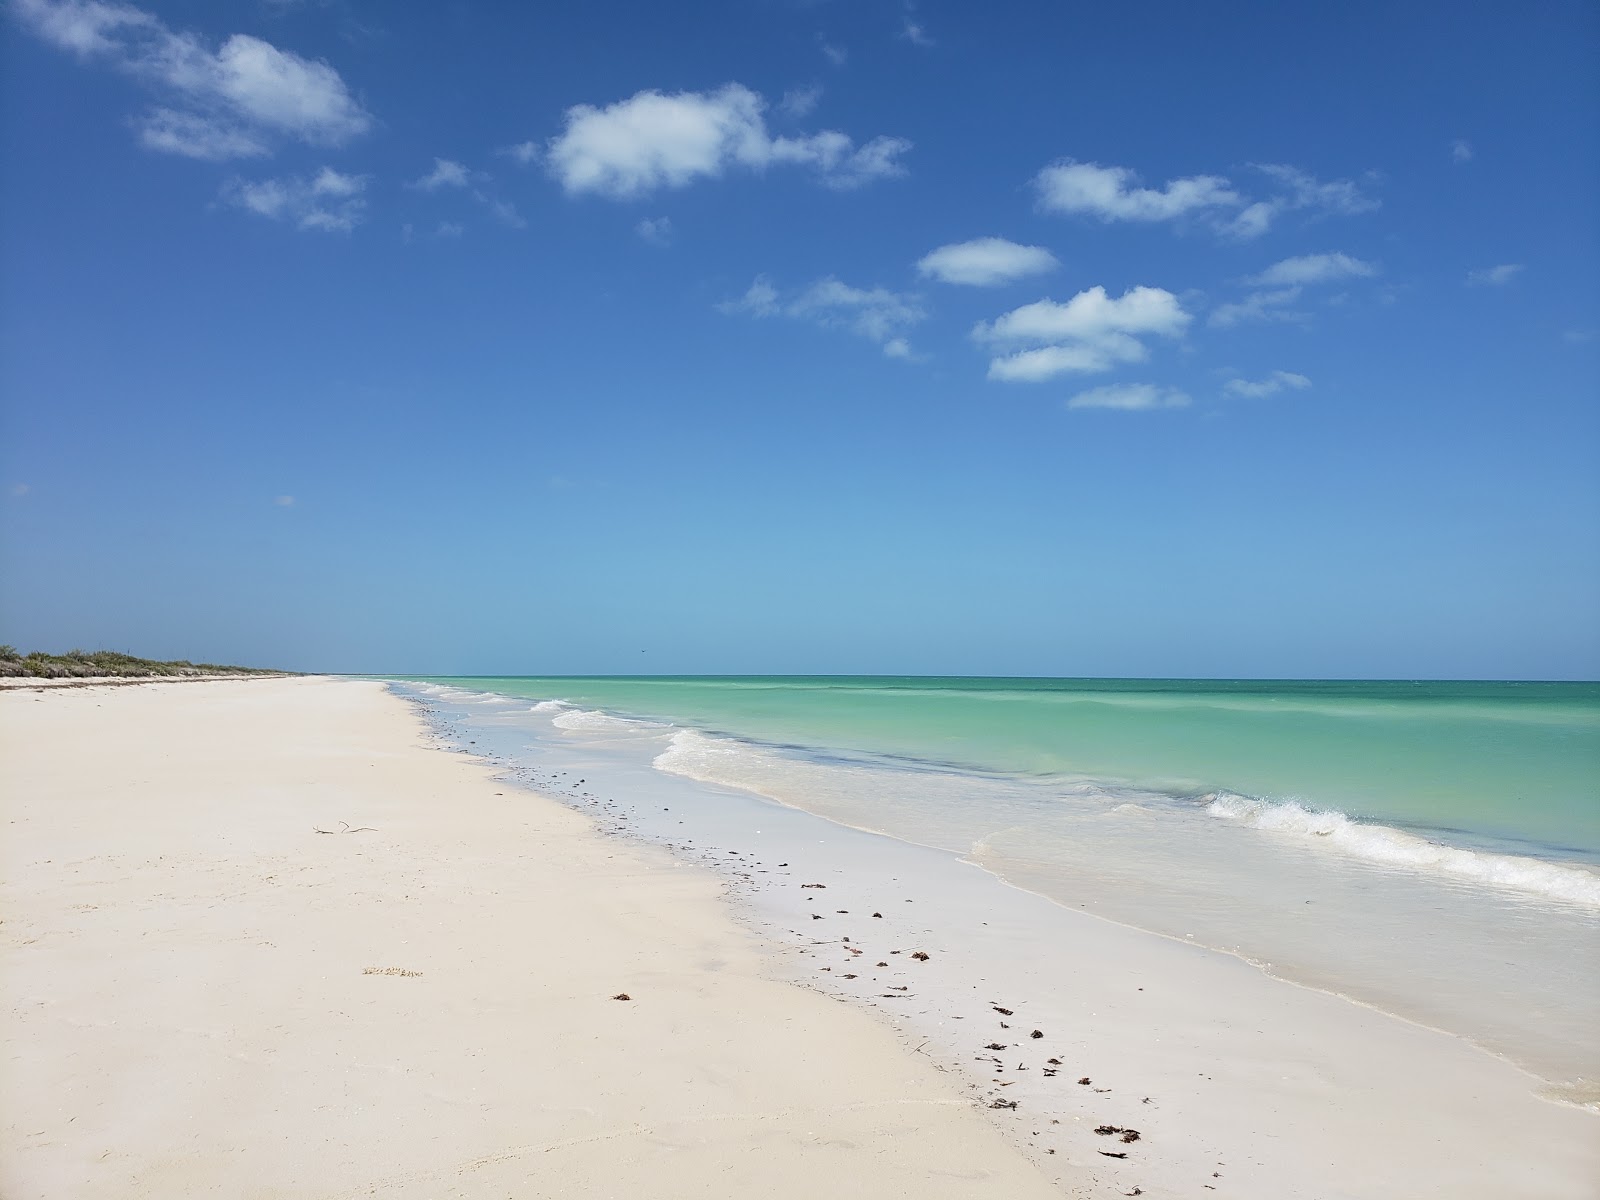 Zdjęcie Cancunito beach z powierzchnią turkusowa woda